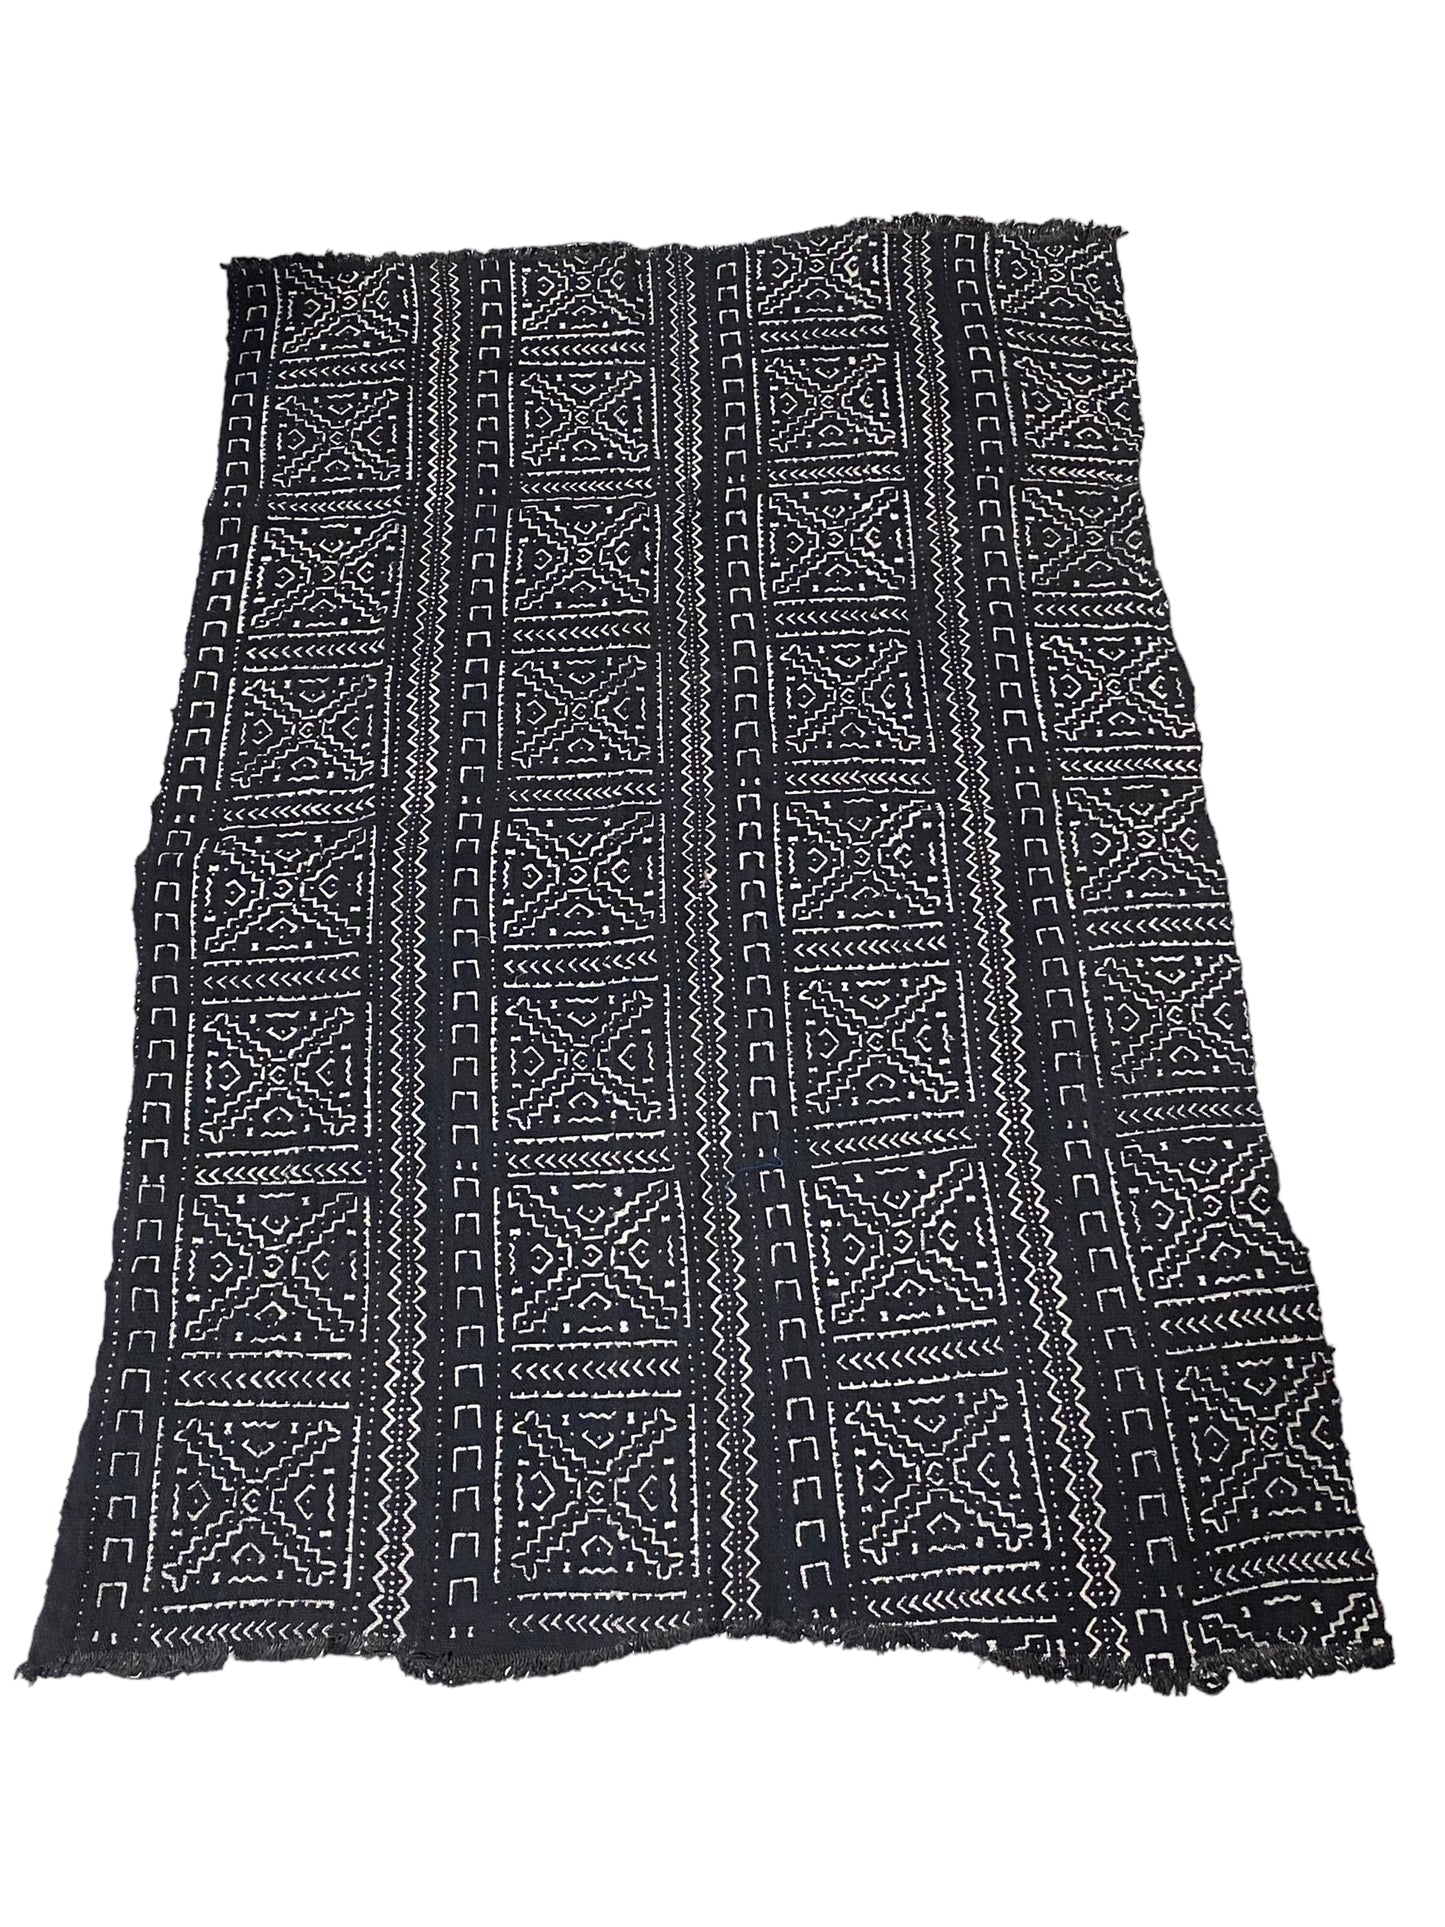 # 5735 African Bogolan Mud Cloth Textile  Mali 64" by 40"